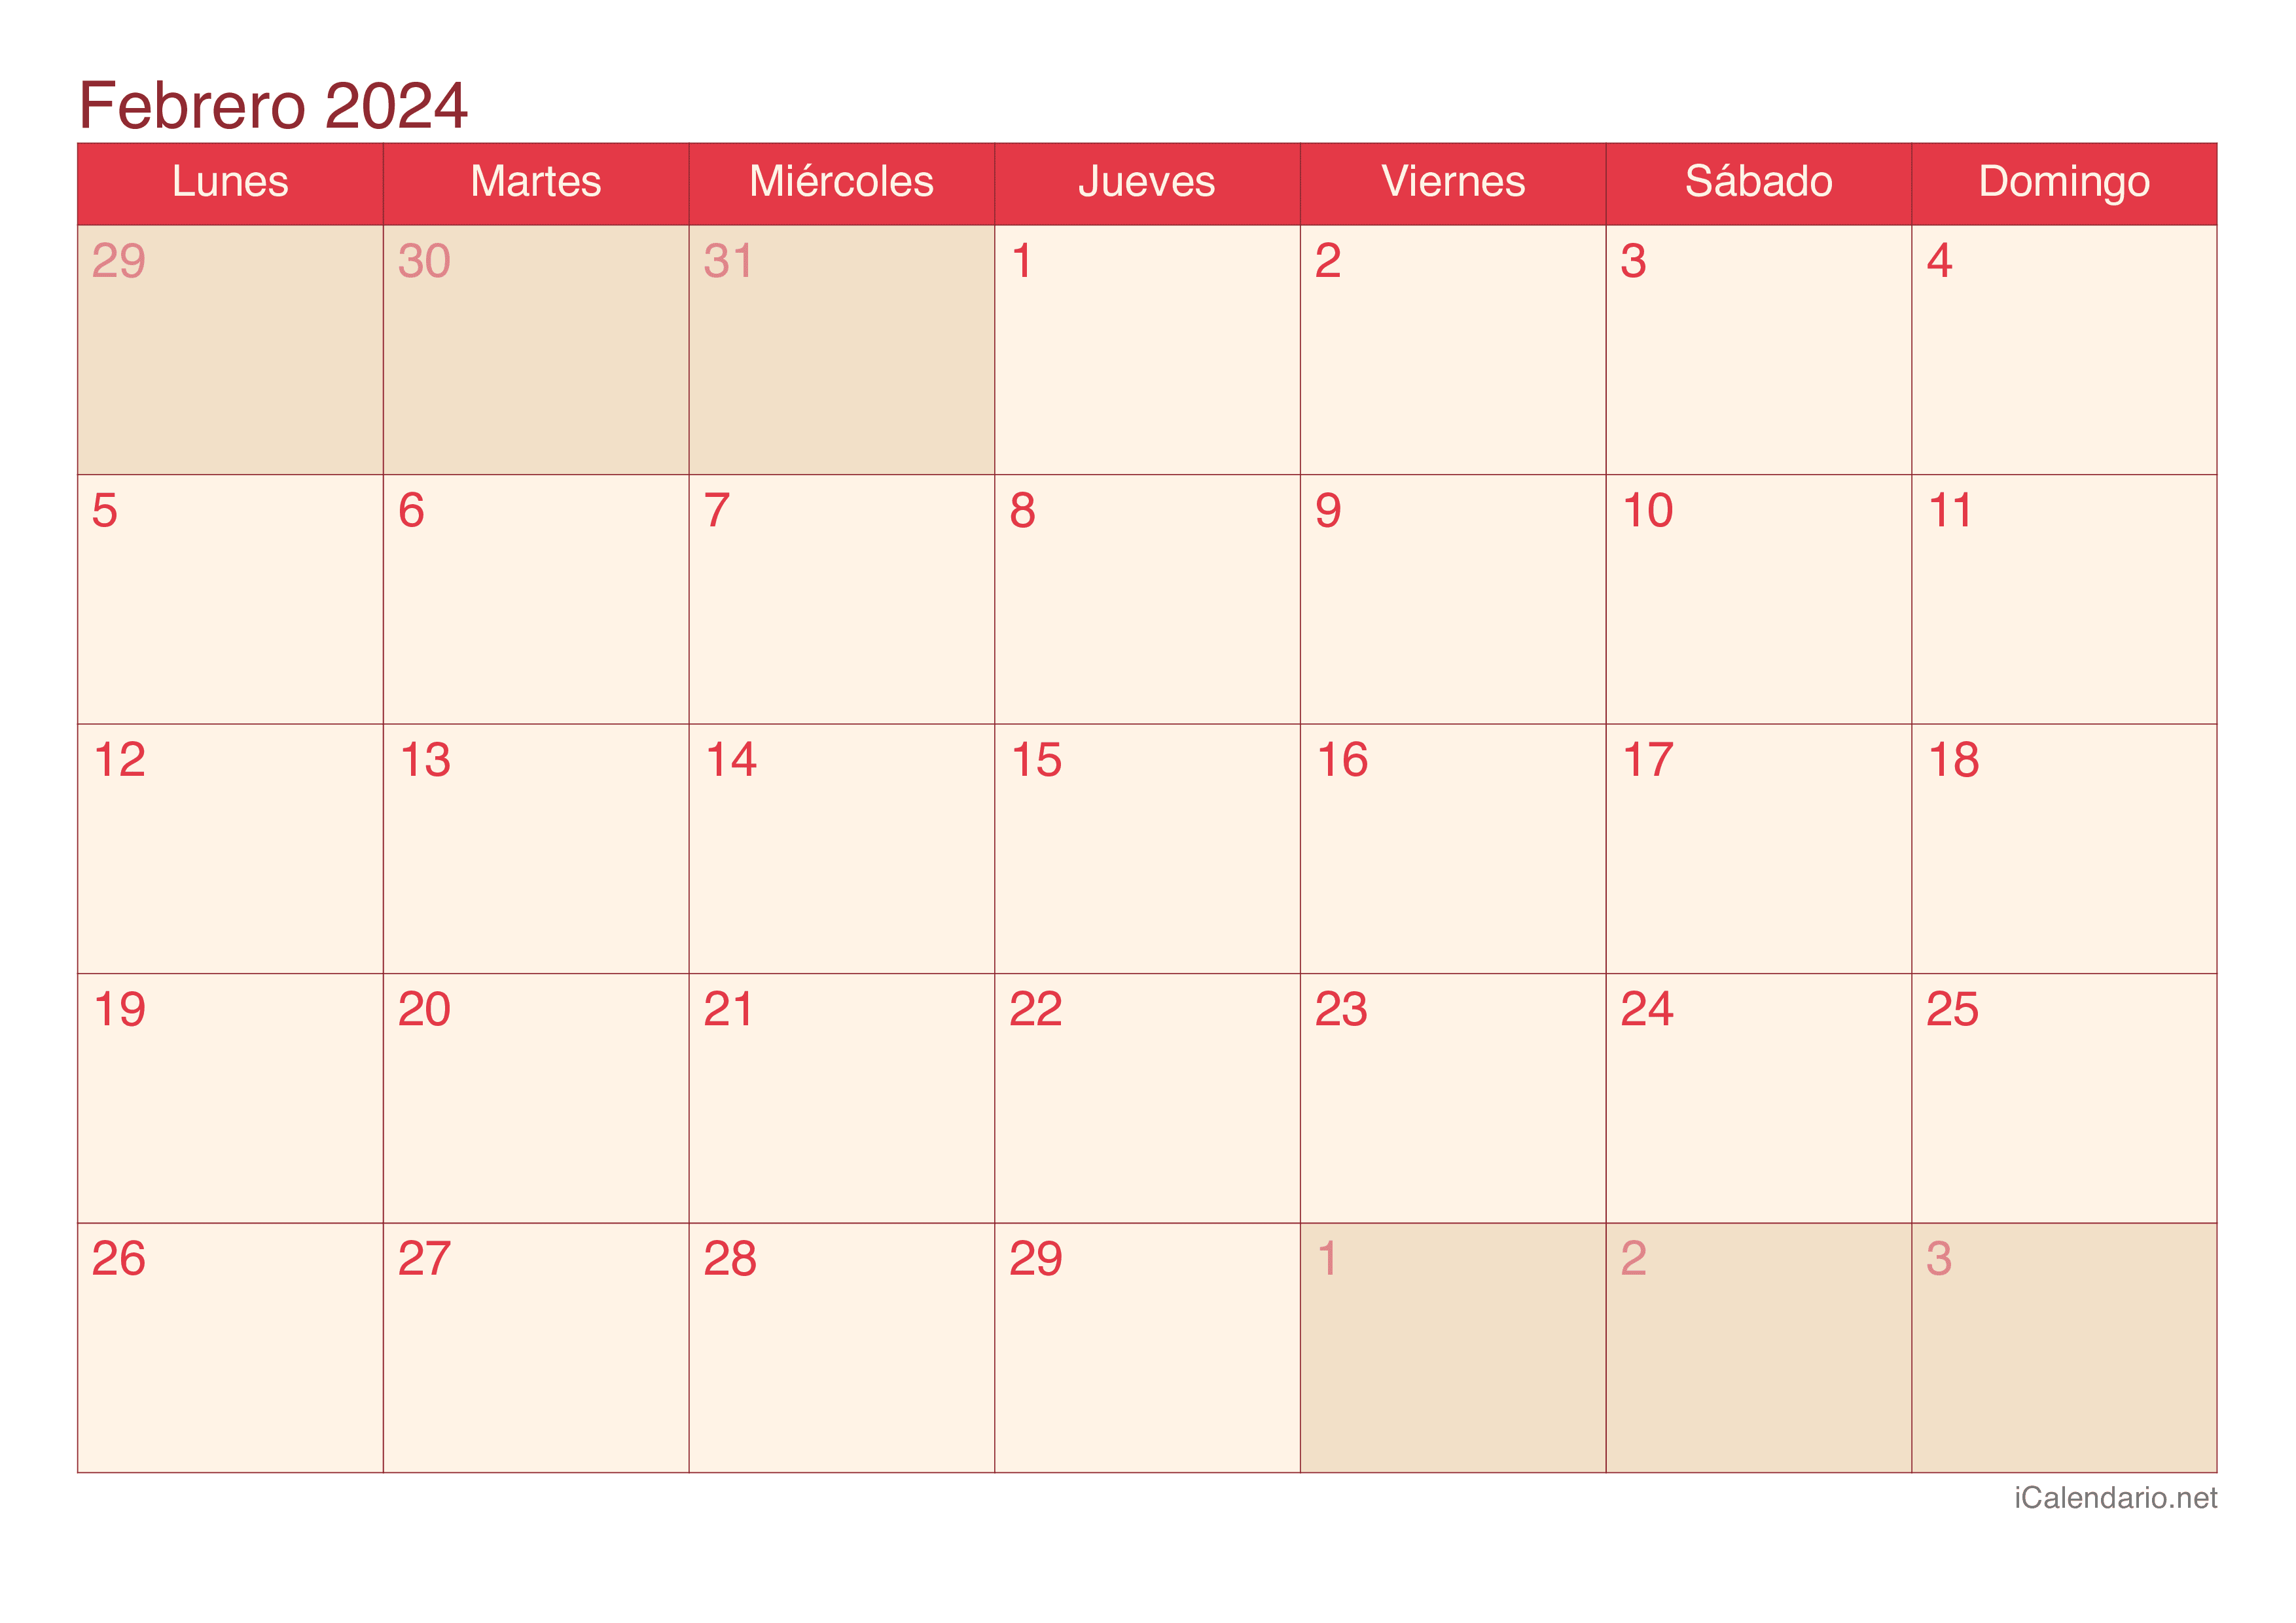 Calendario de febrero 2024 - Cherry